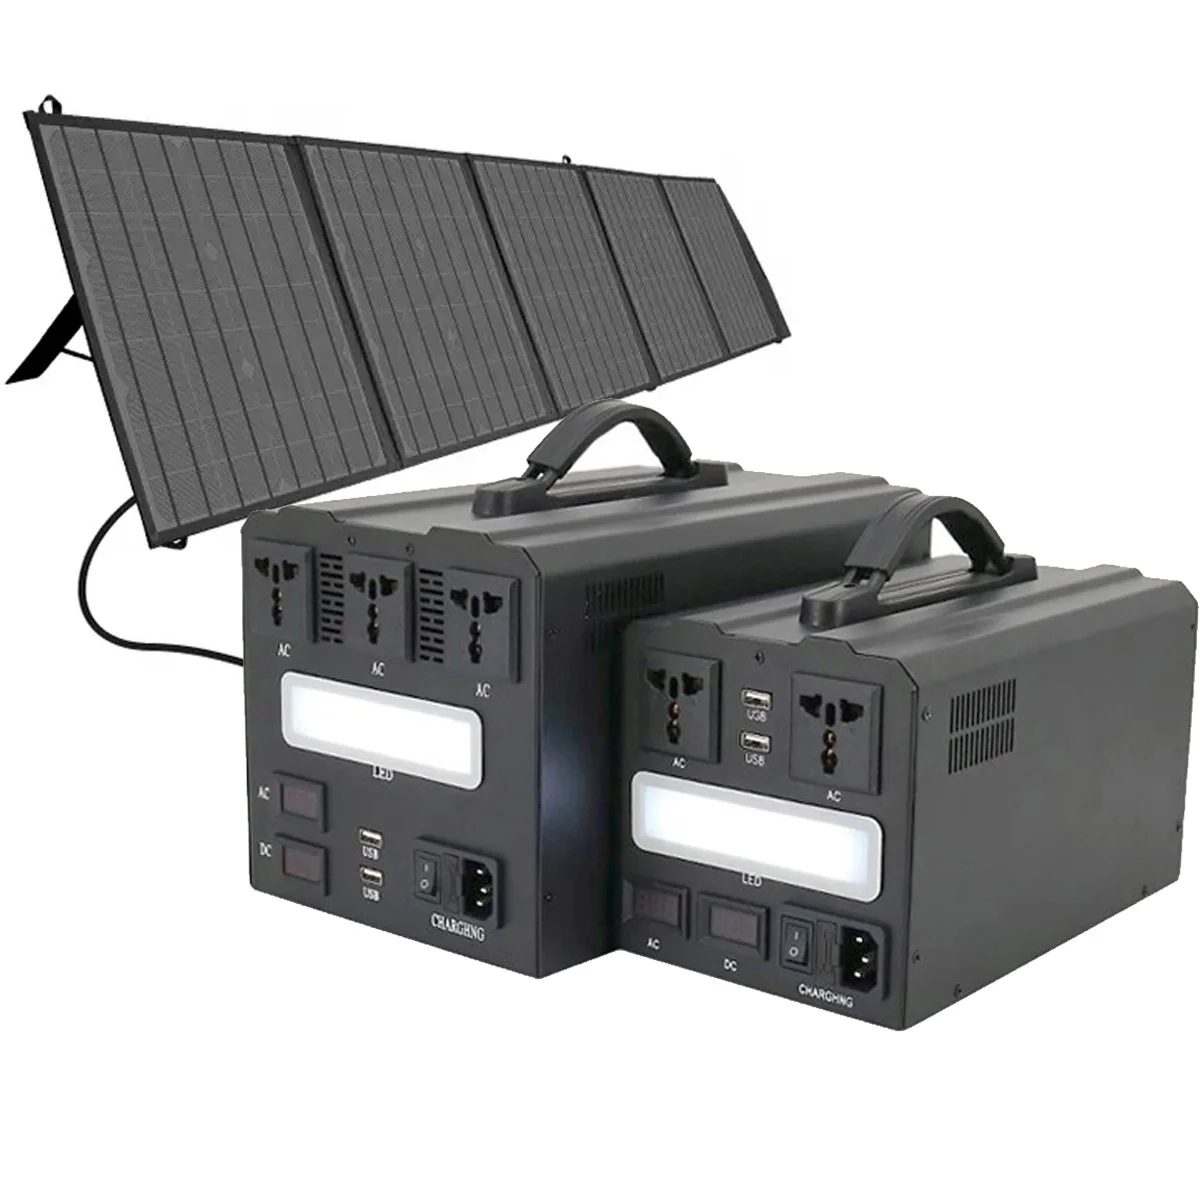 

solar generator 200w 300w 500w 600w 1000w 2000w 800w 1500w Outdoor power bank portable power station With solar panel generator